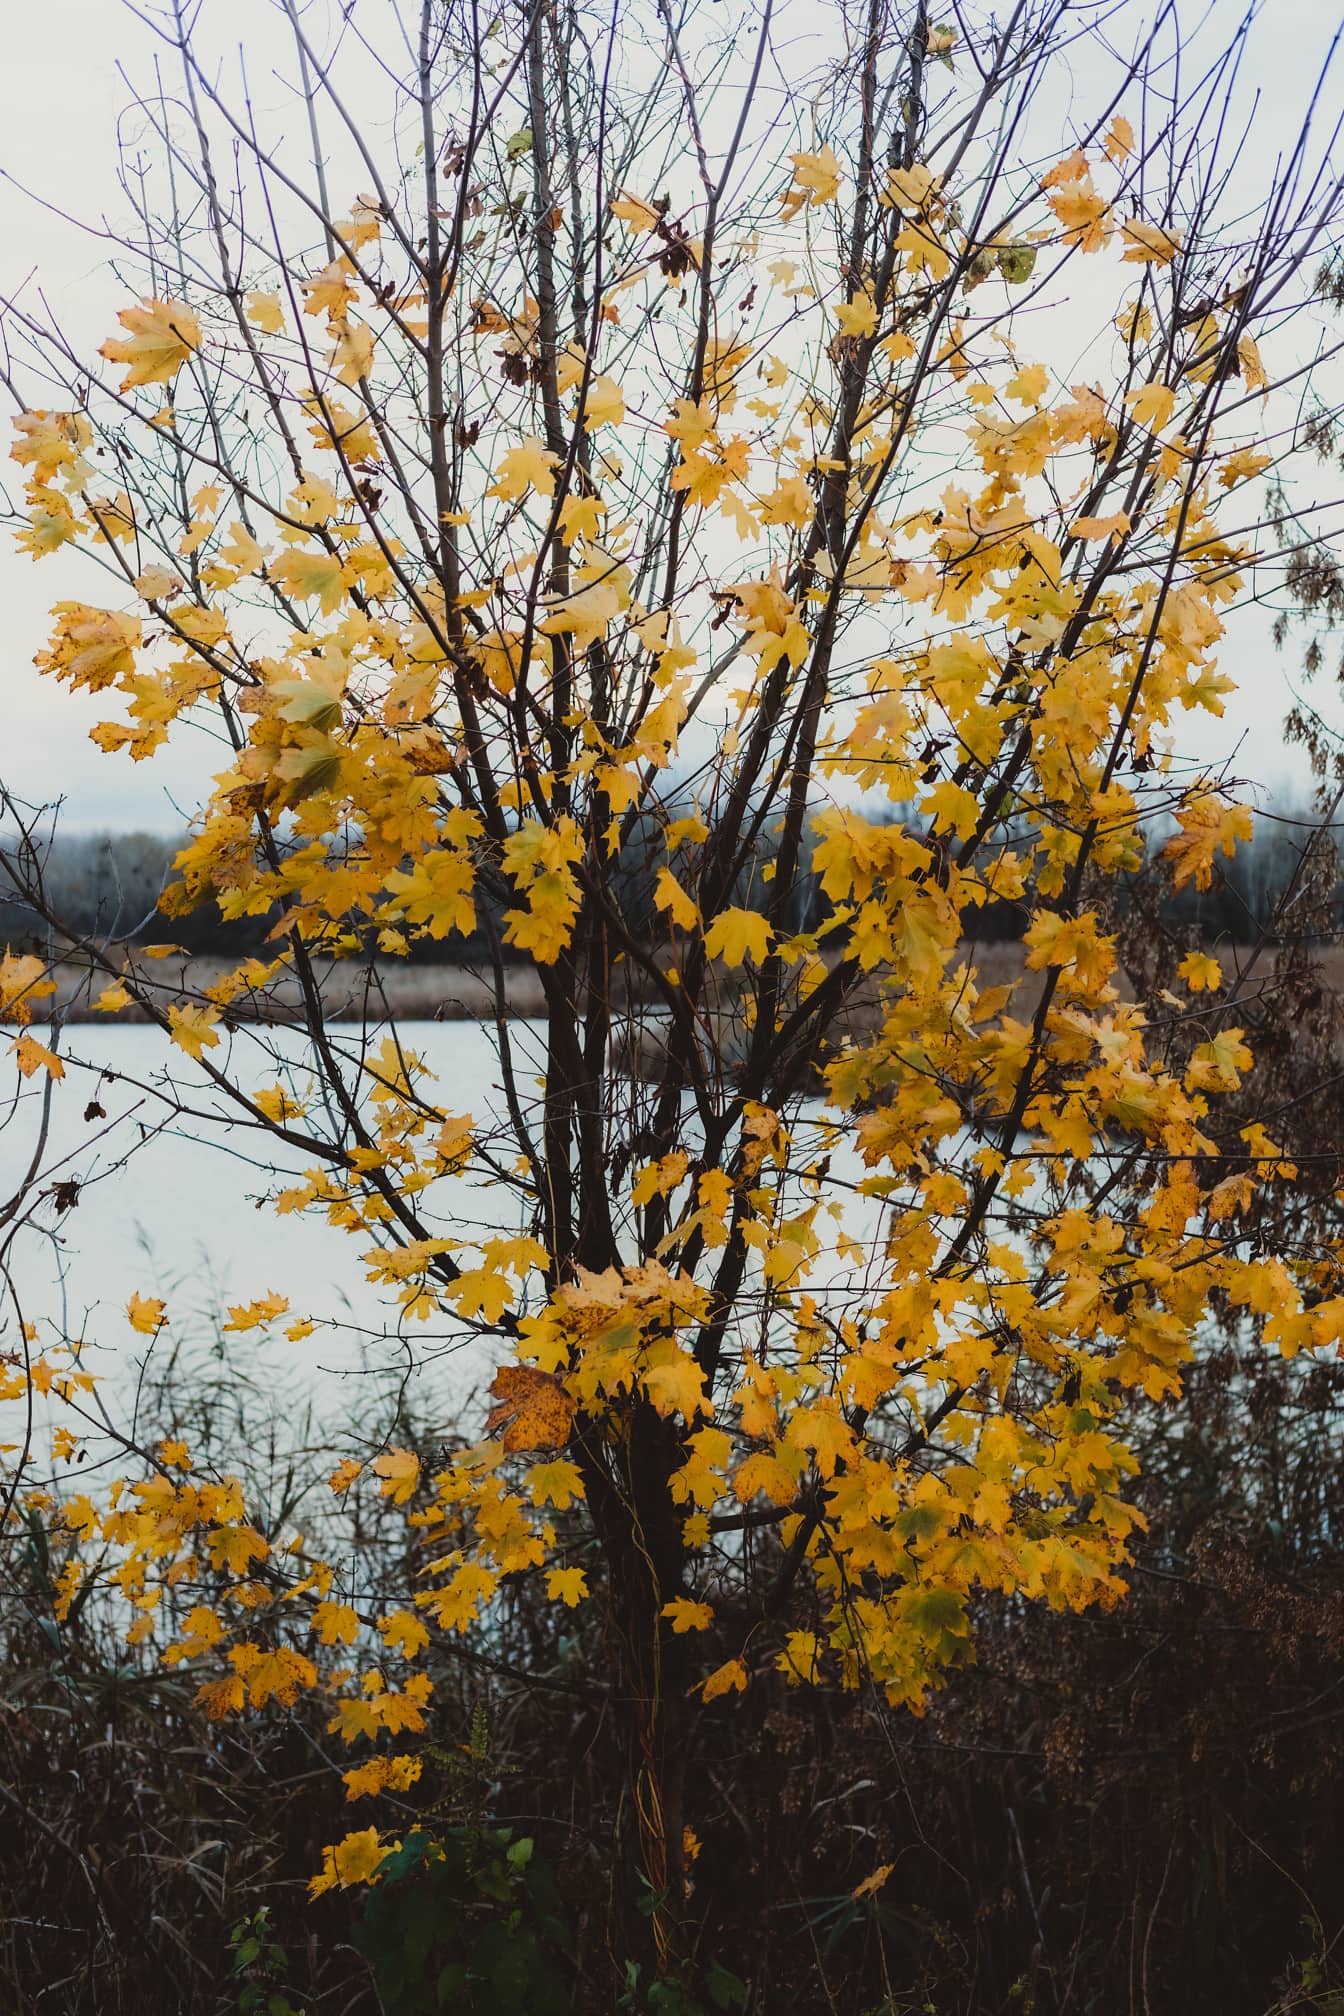 Foglie marrone giallastre sui rami degli alberi nella stagione autunnale